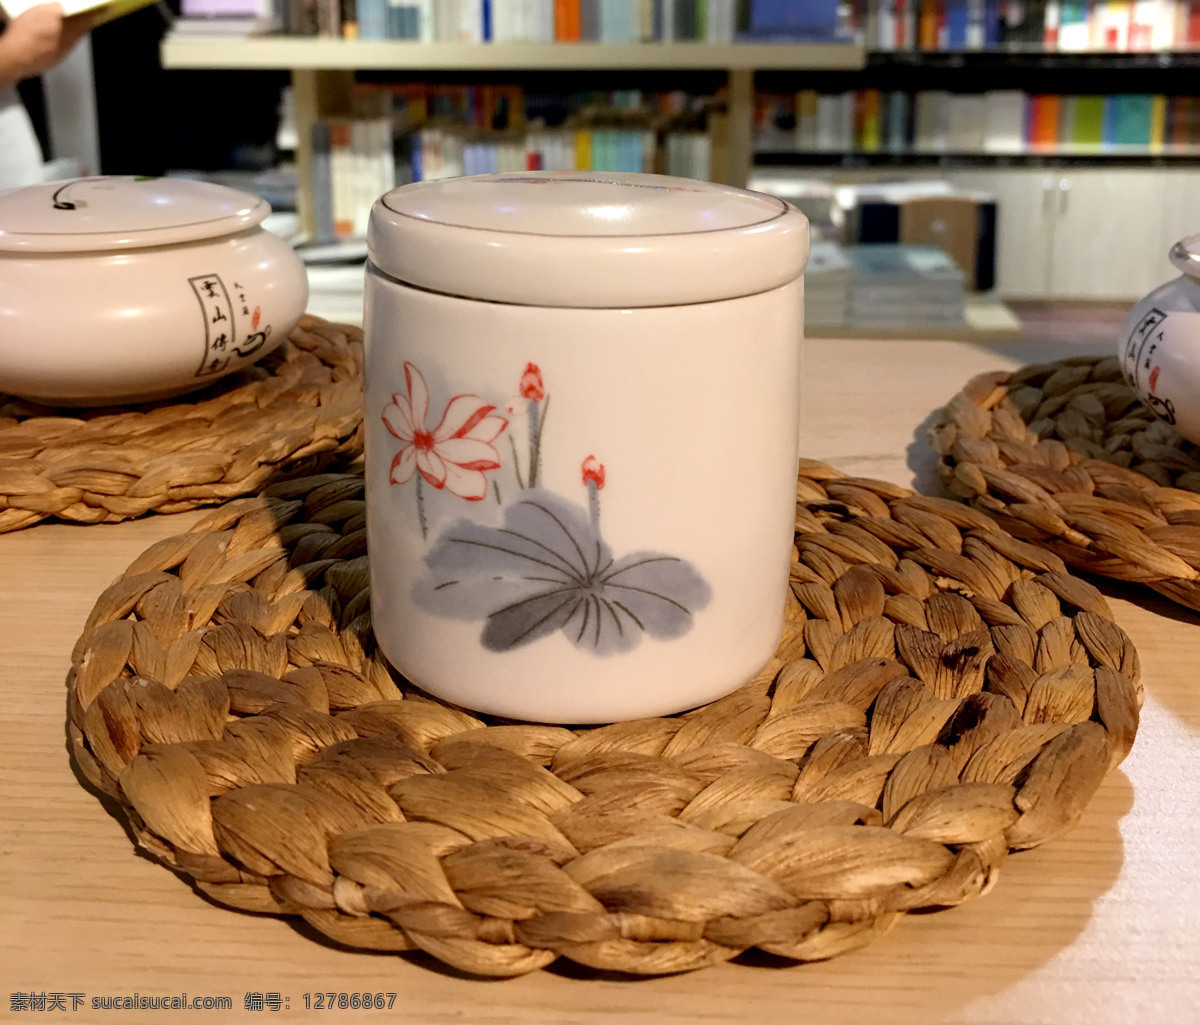 瓷器 茶具 彩绘 釉彩 荷花 水墨中国画 艺术 摆件 生活 生活百科 生活素材